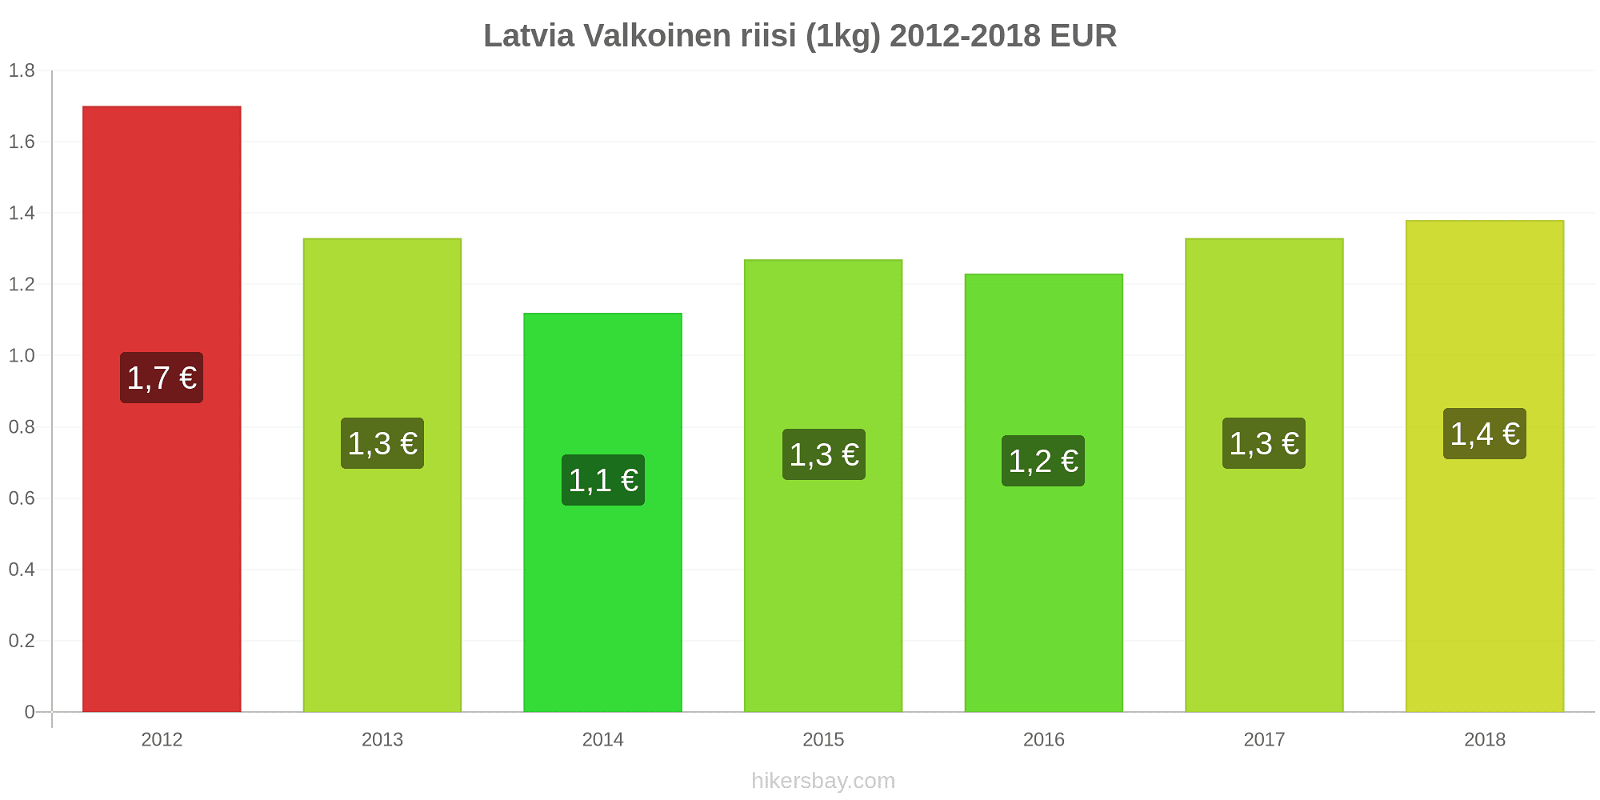 Latvia hintojen muutokset Valkoinen riisi (1kg) hikersbay.com